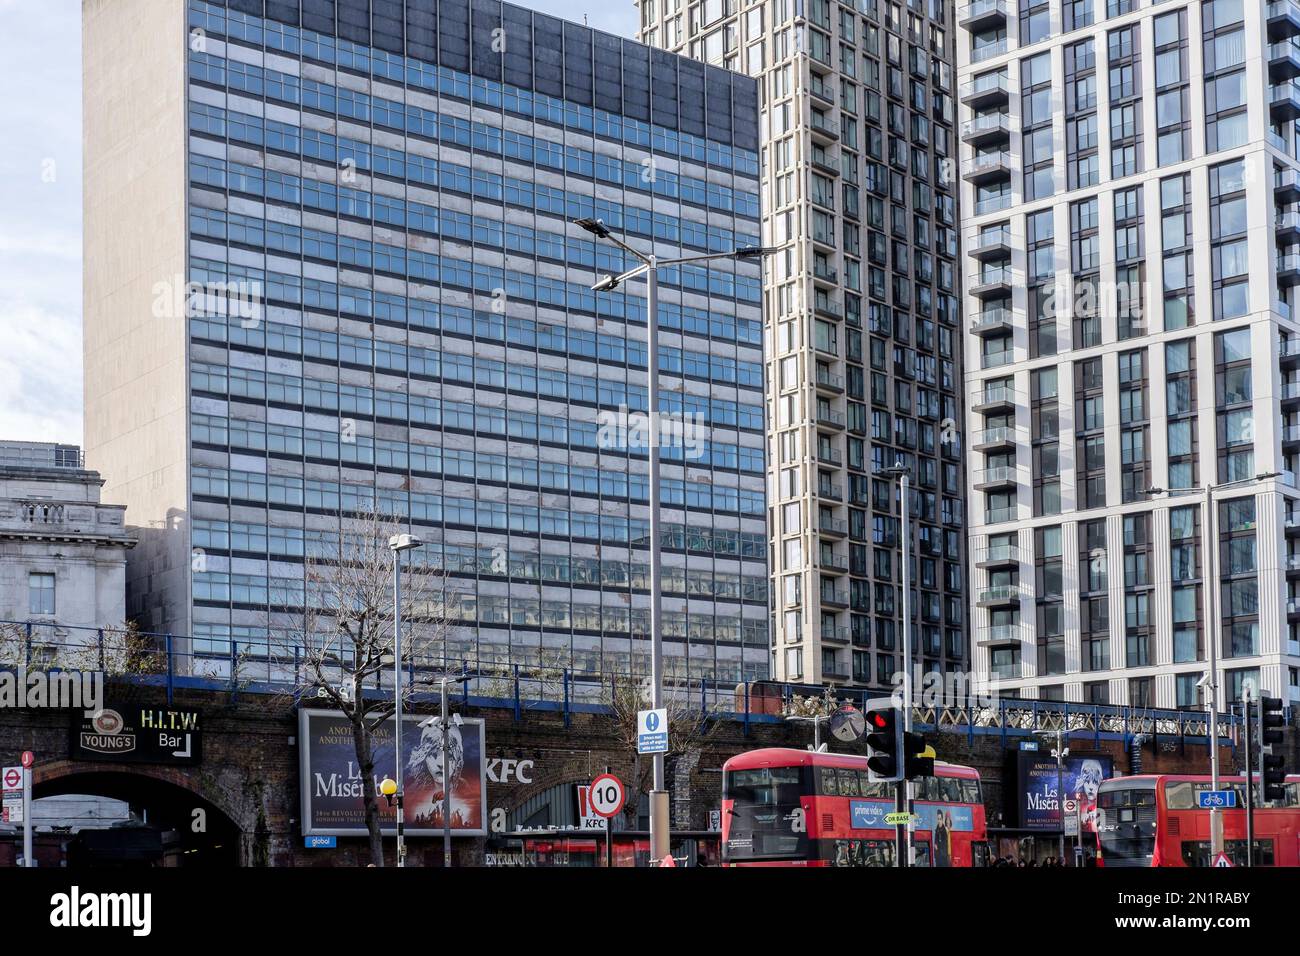 Das Tower Building neben dem Bahnhof Waterloo sowie die Elizabeth House Building an der York Road sind für Abbruch und Umbau in London geplant. Stockfoto